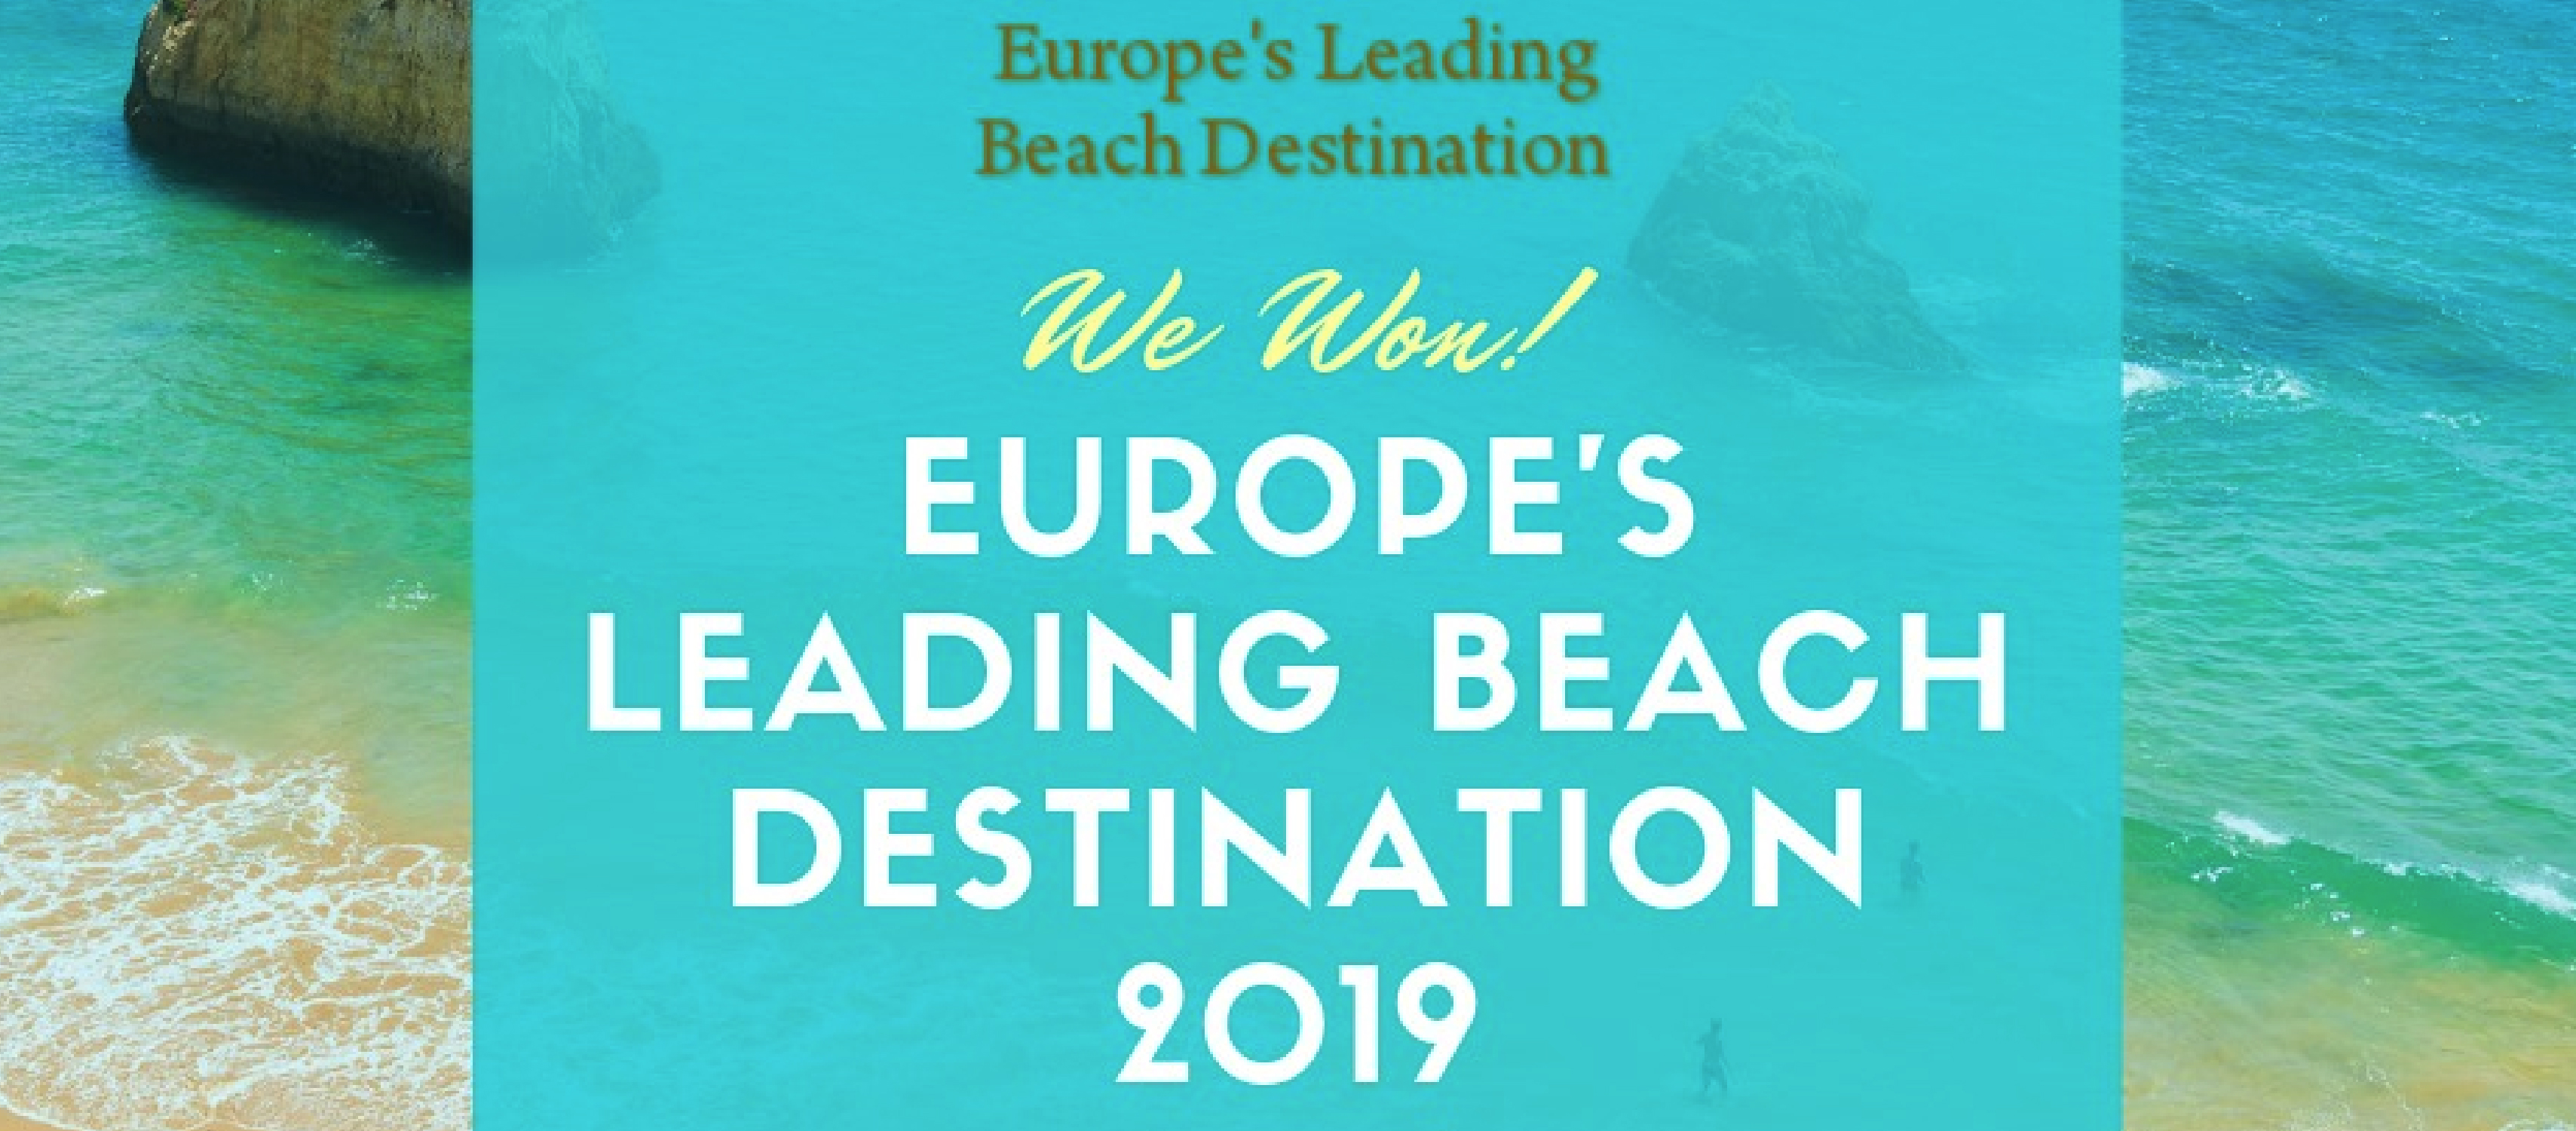 Algarve volta a ganhar “Óscar” de Melhor Destino de Praia da Europa 2019